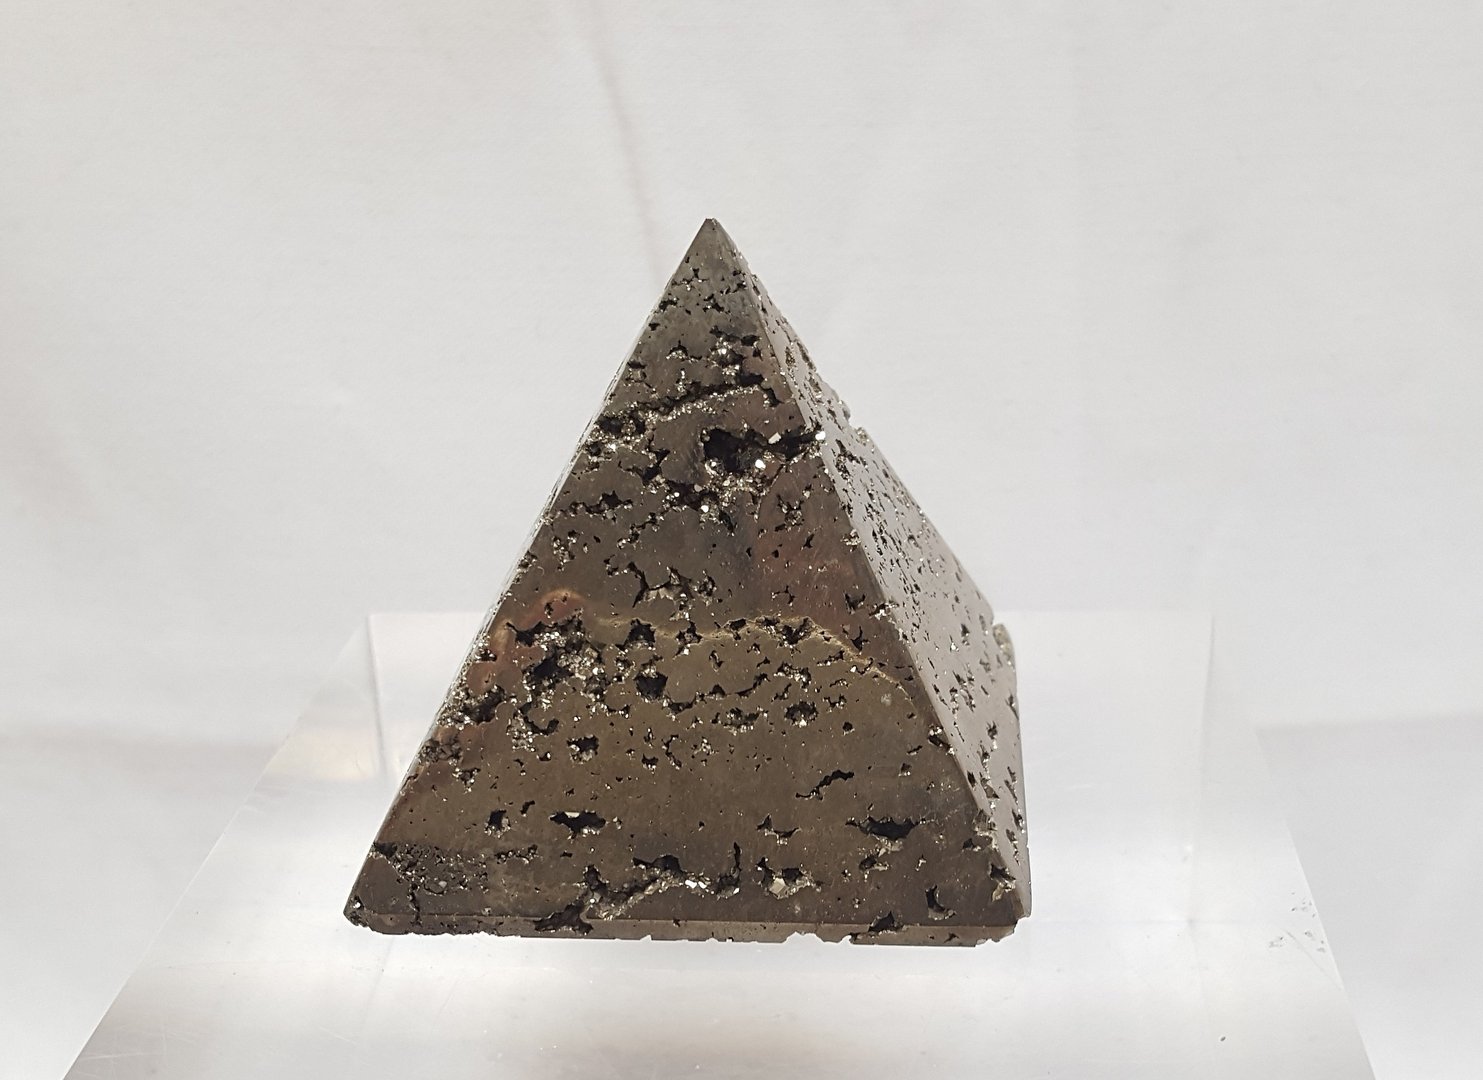 PYRITE - pyramide taillée dans un morceau de pyrite cristallisé